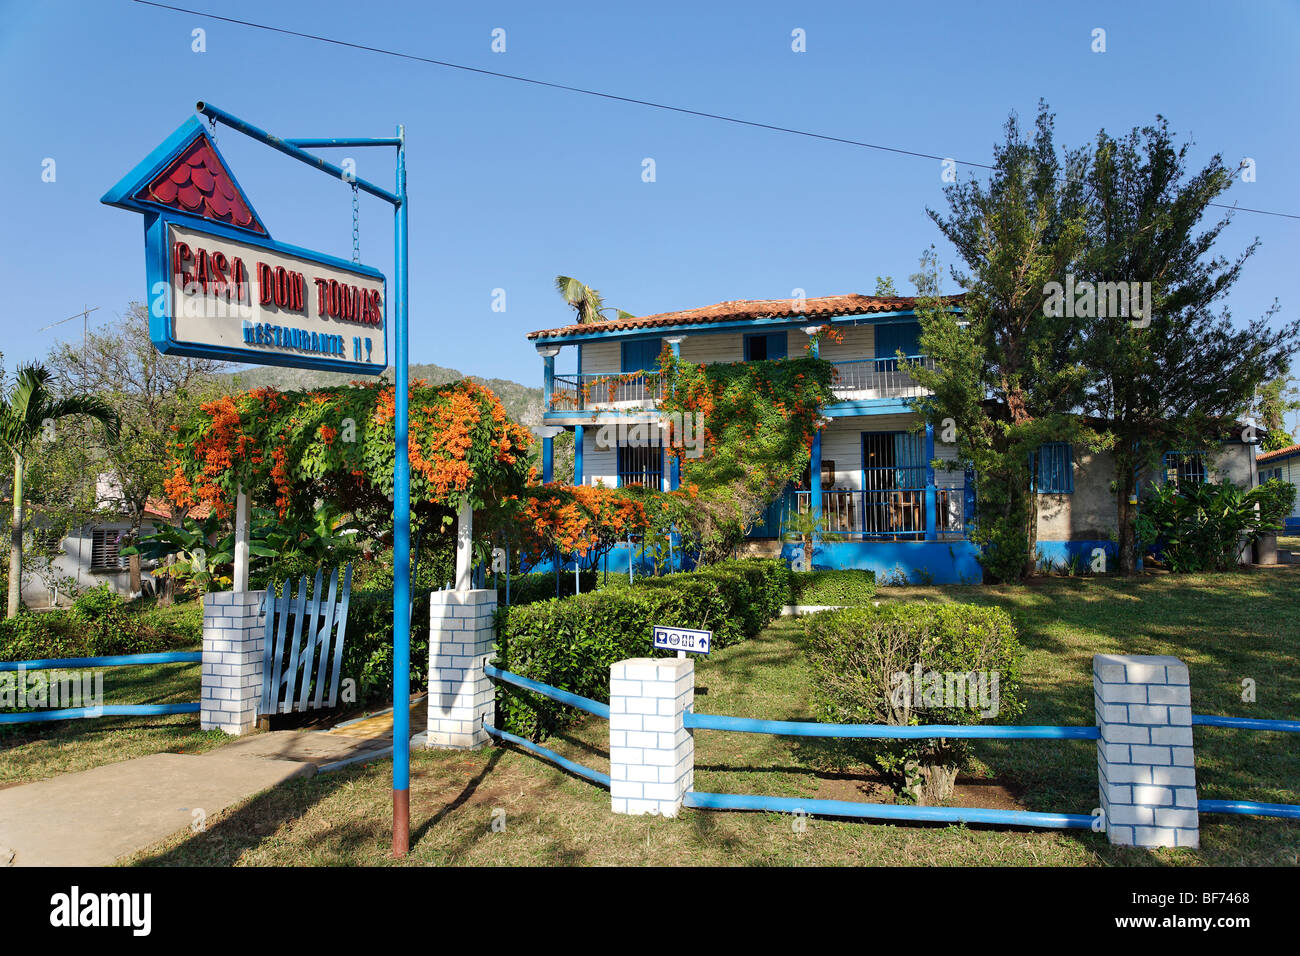 Restaurant Casa don Tomas, Vinales, Pinar del Rio, Cuba, West Indies Stock Photo